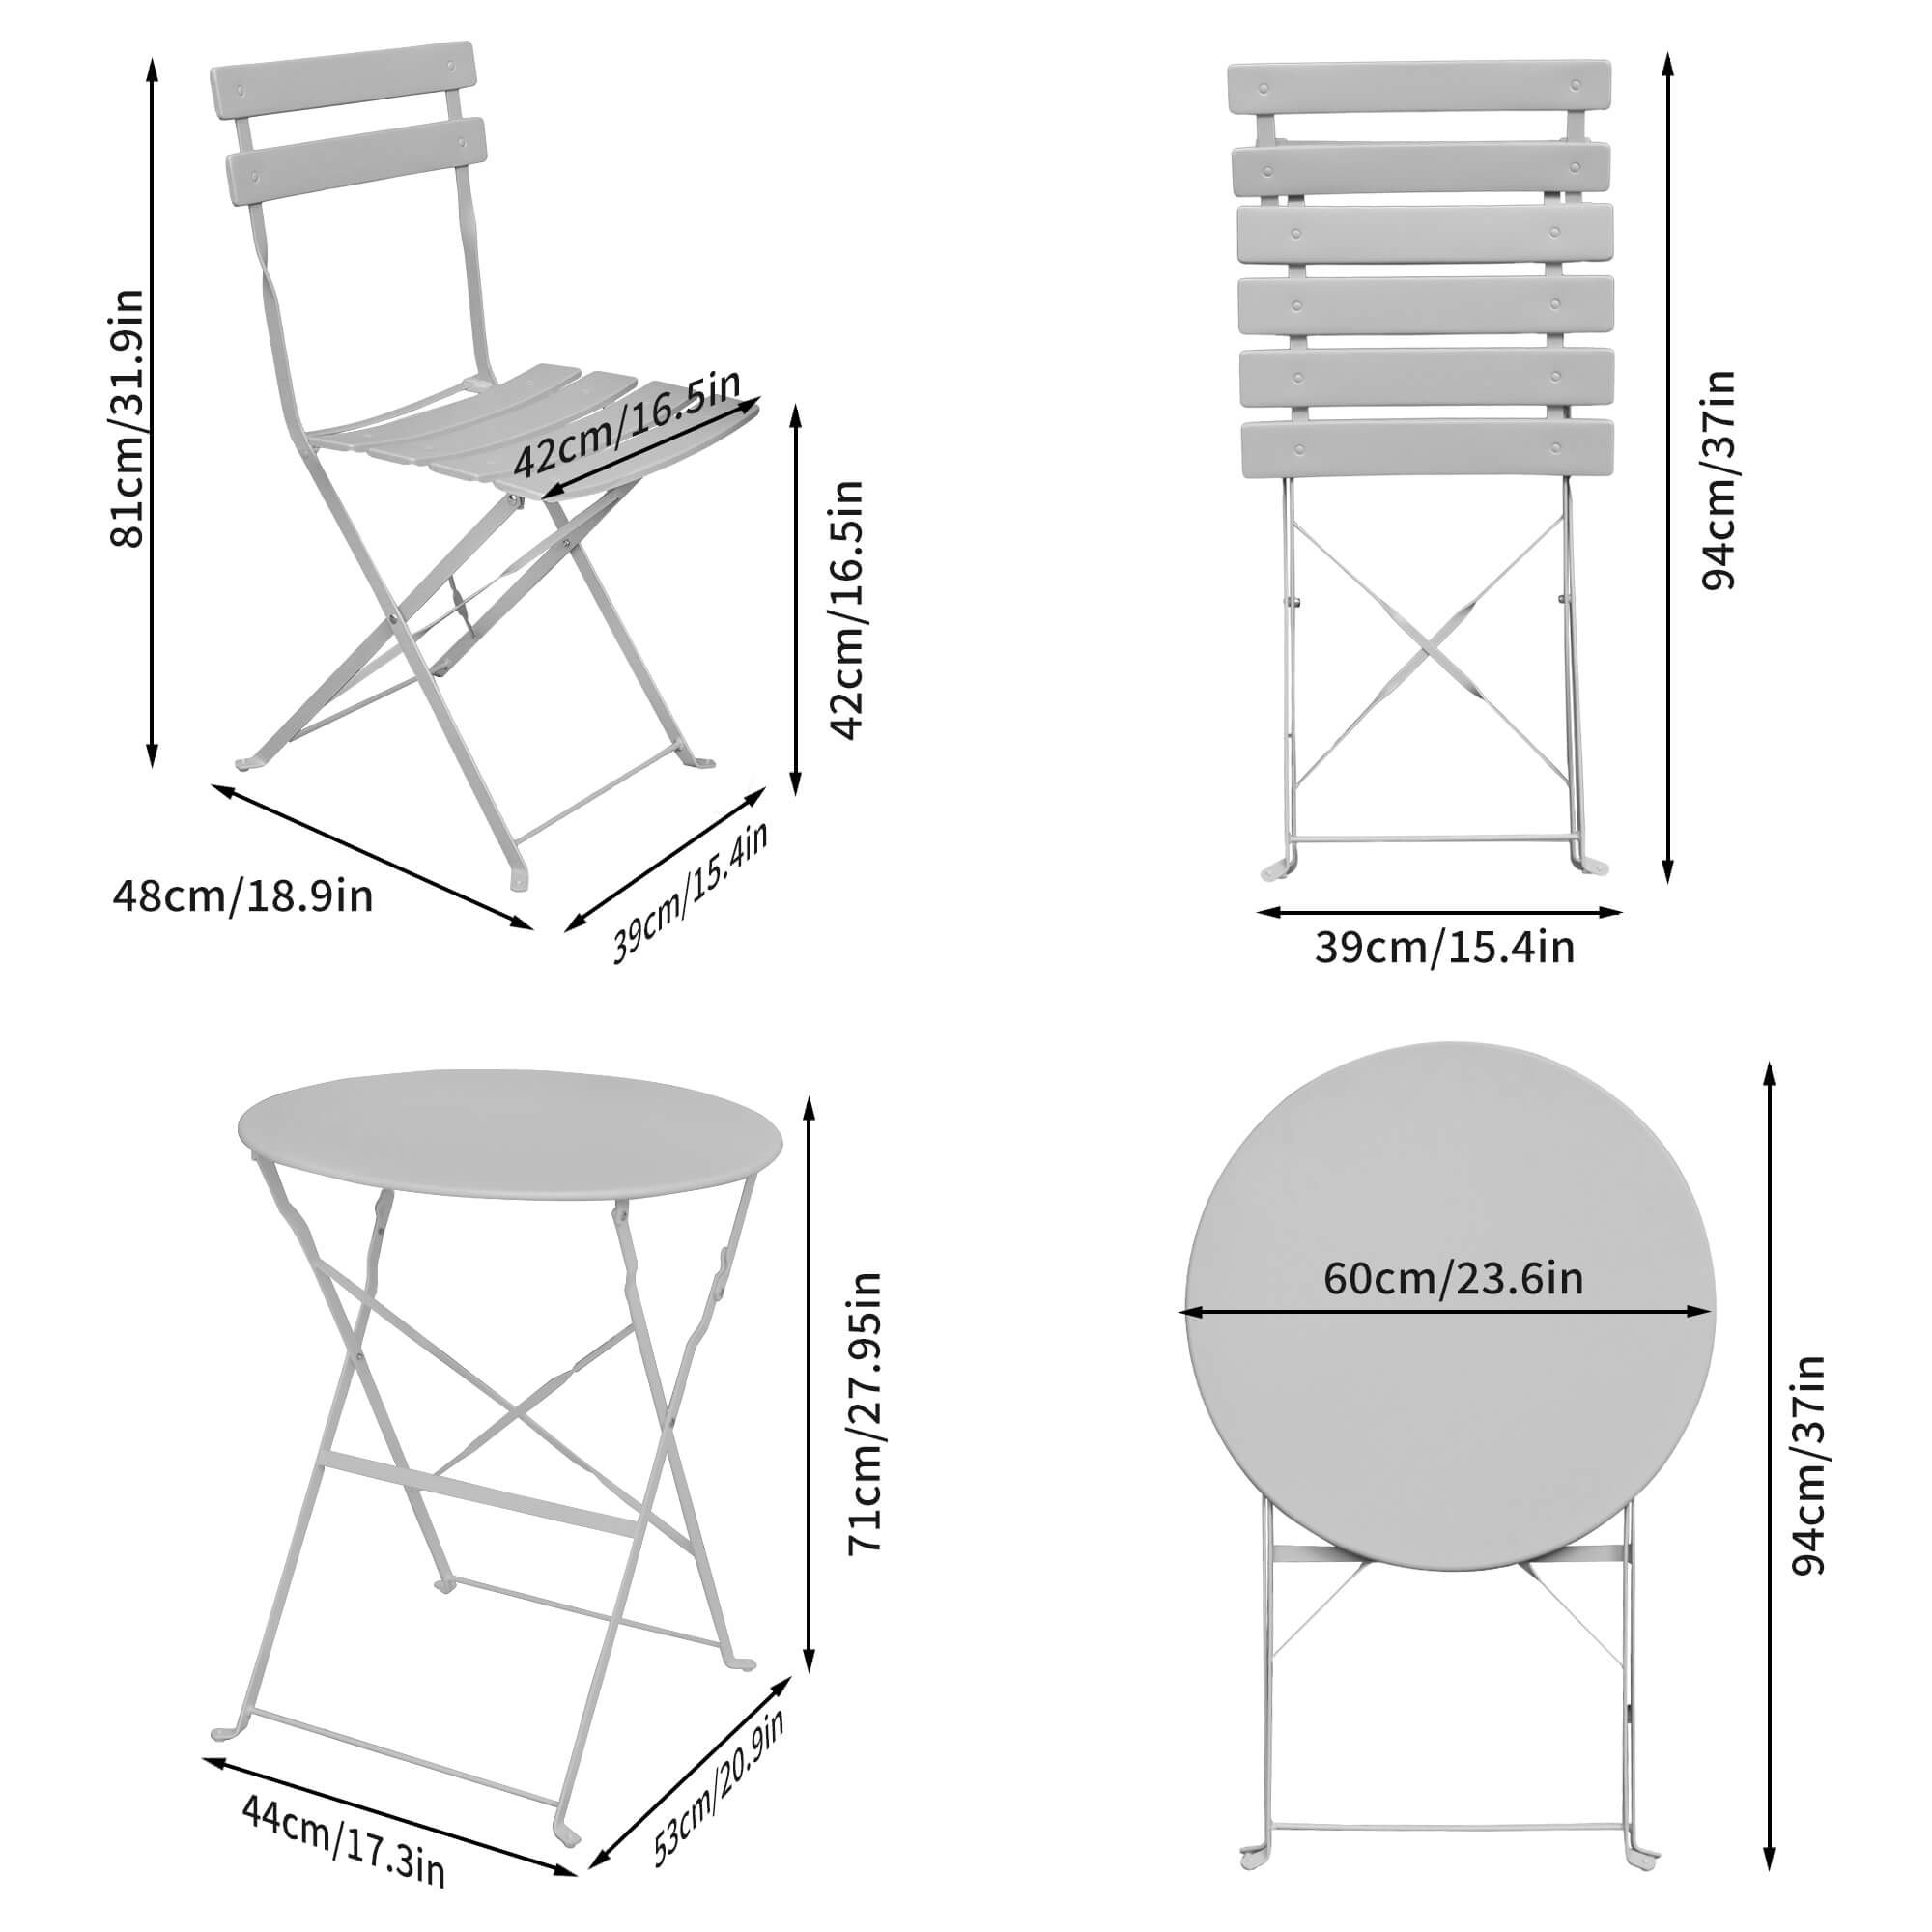 Wymiary 3D - Zestaw mebli balkonowych ORION Okrągły stół i 2 krzesła w eleganckiej szarości - AKORD Fabryka Mebli